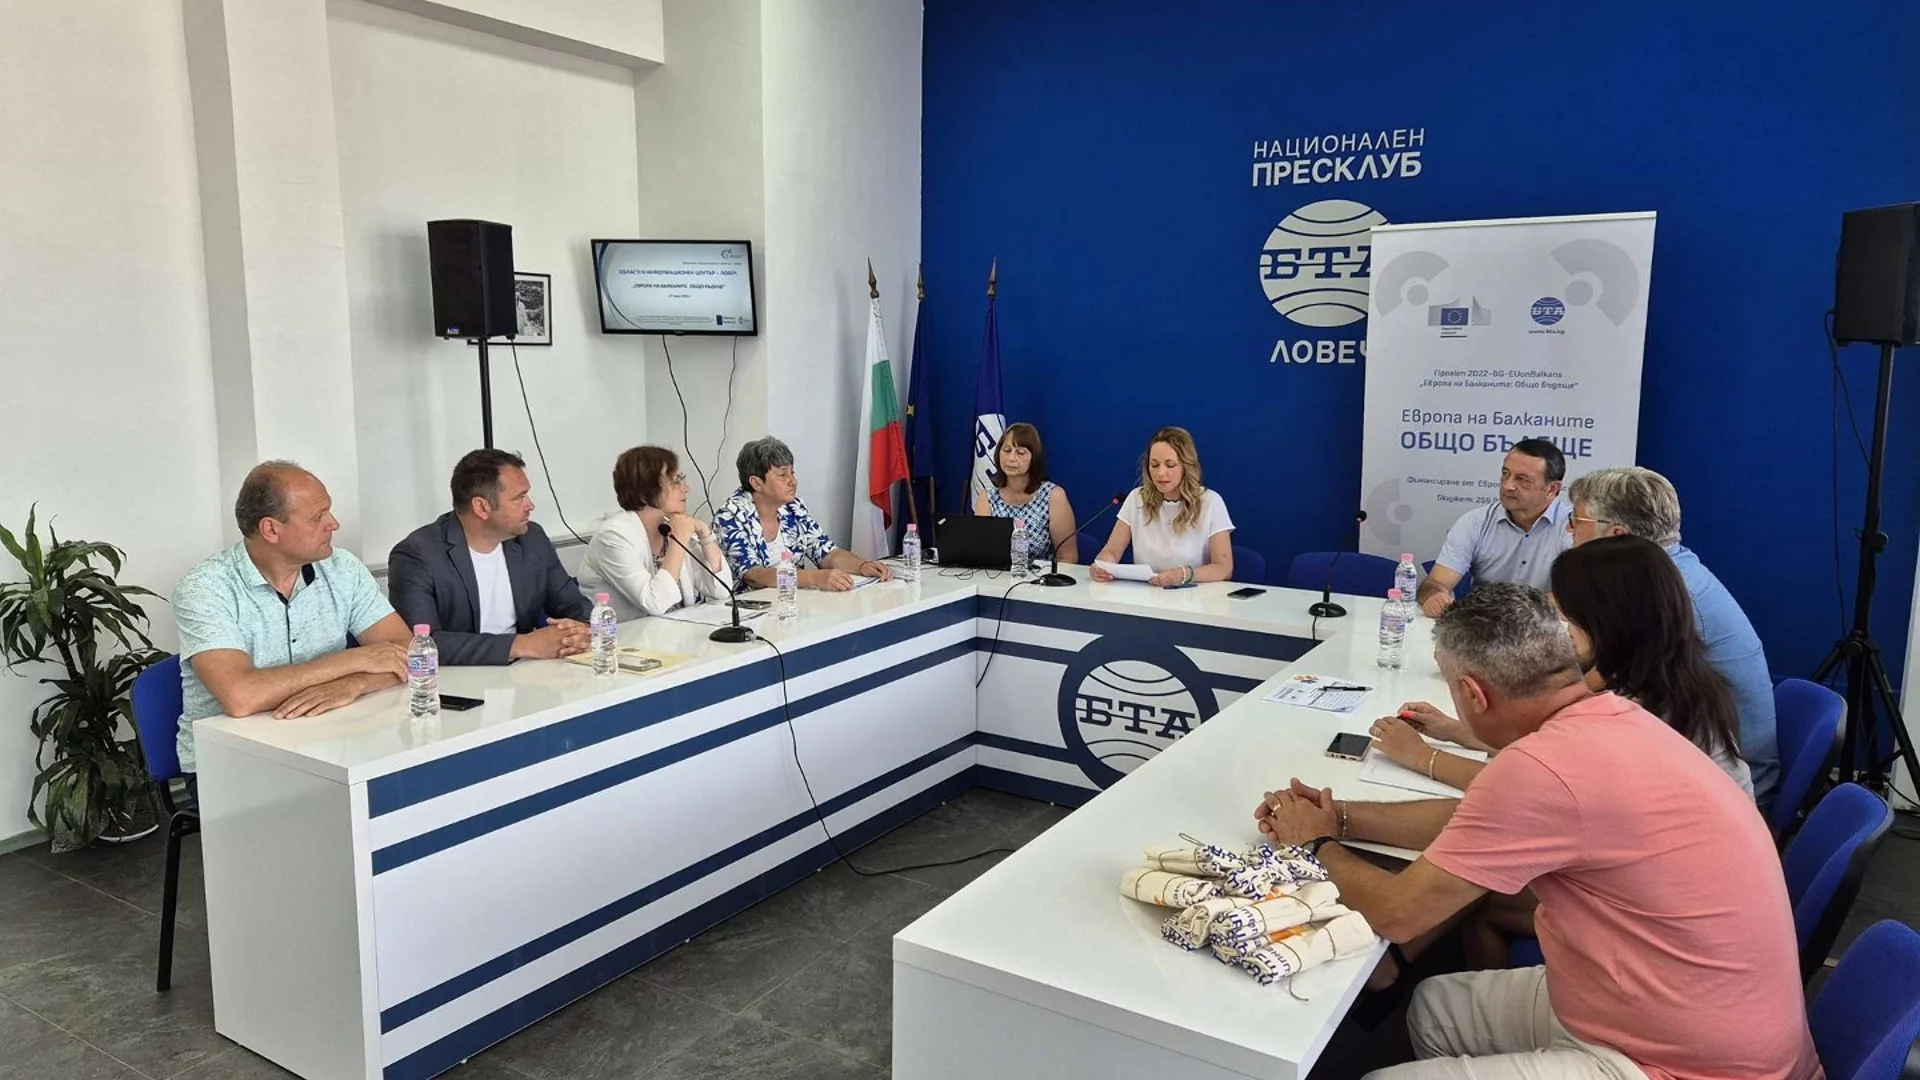 Зам.-кмет на община Тетевен участва на конференцията "Европа на Балканите: Общо бъдеще"